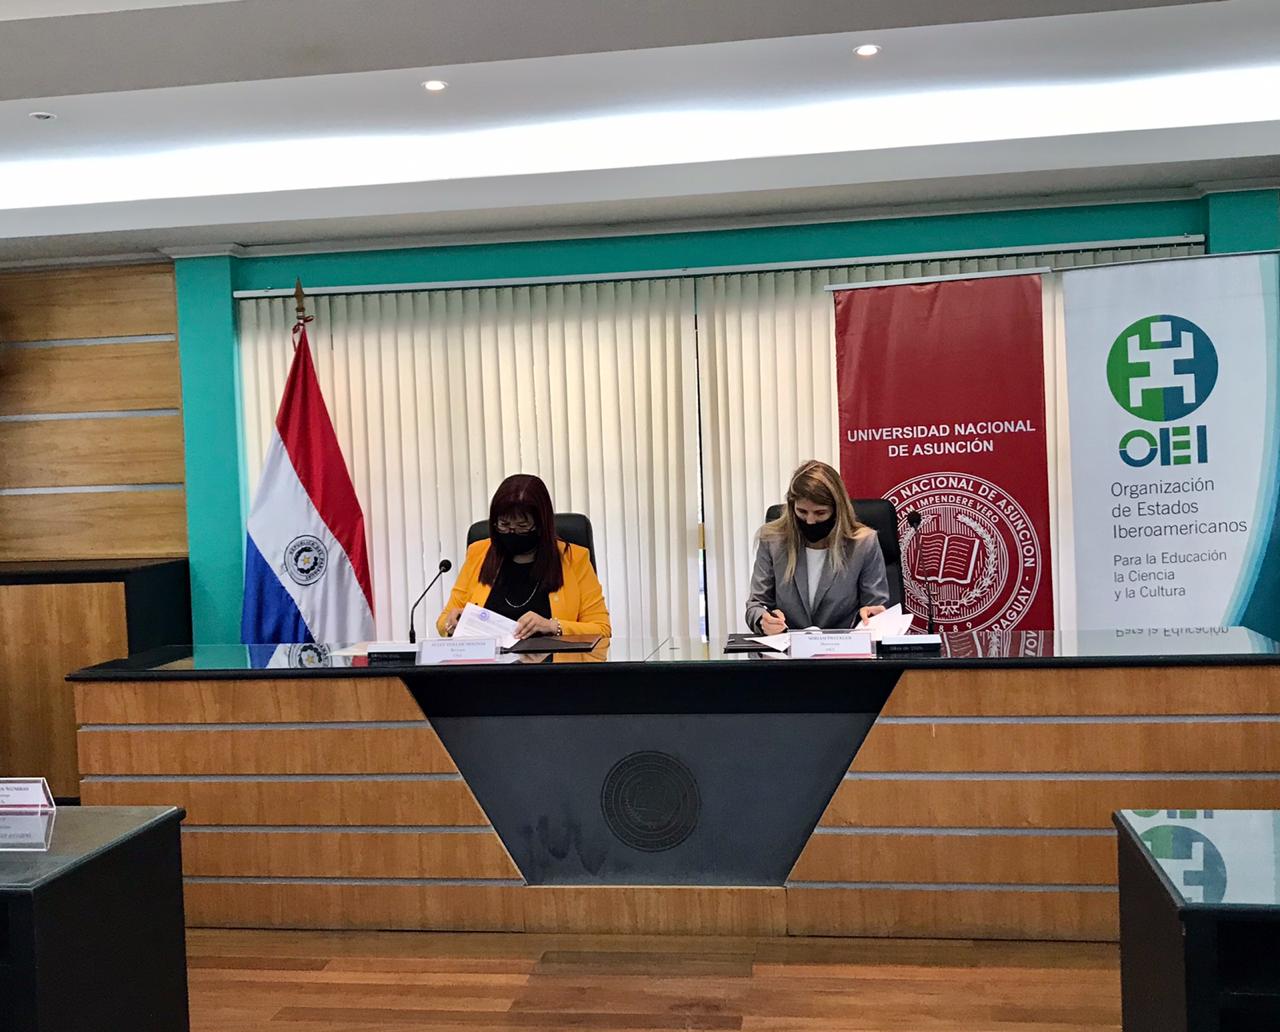 La OEI firma convenio de cooperación interinstitucional con la Universidad Nacional de Asunción